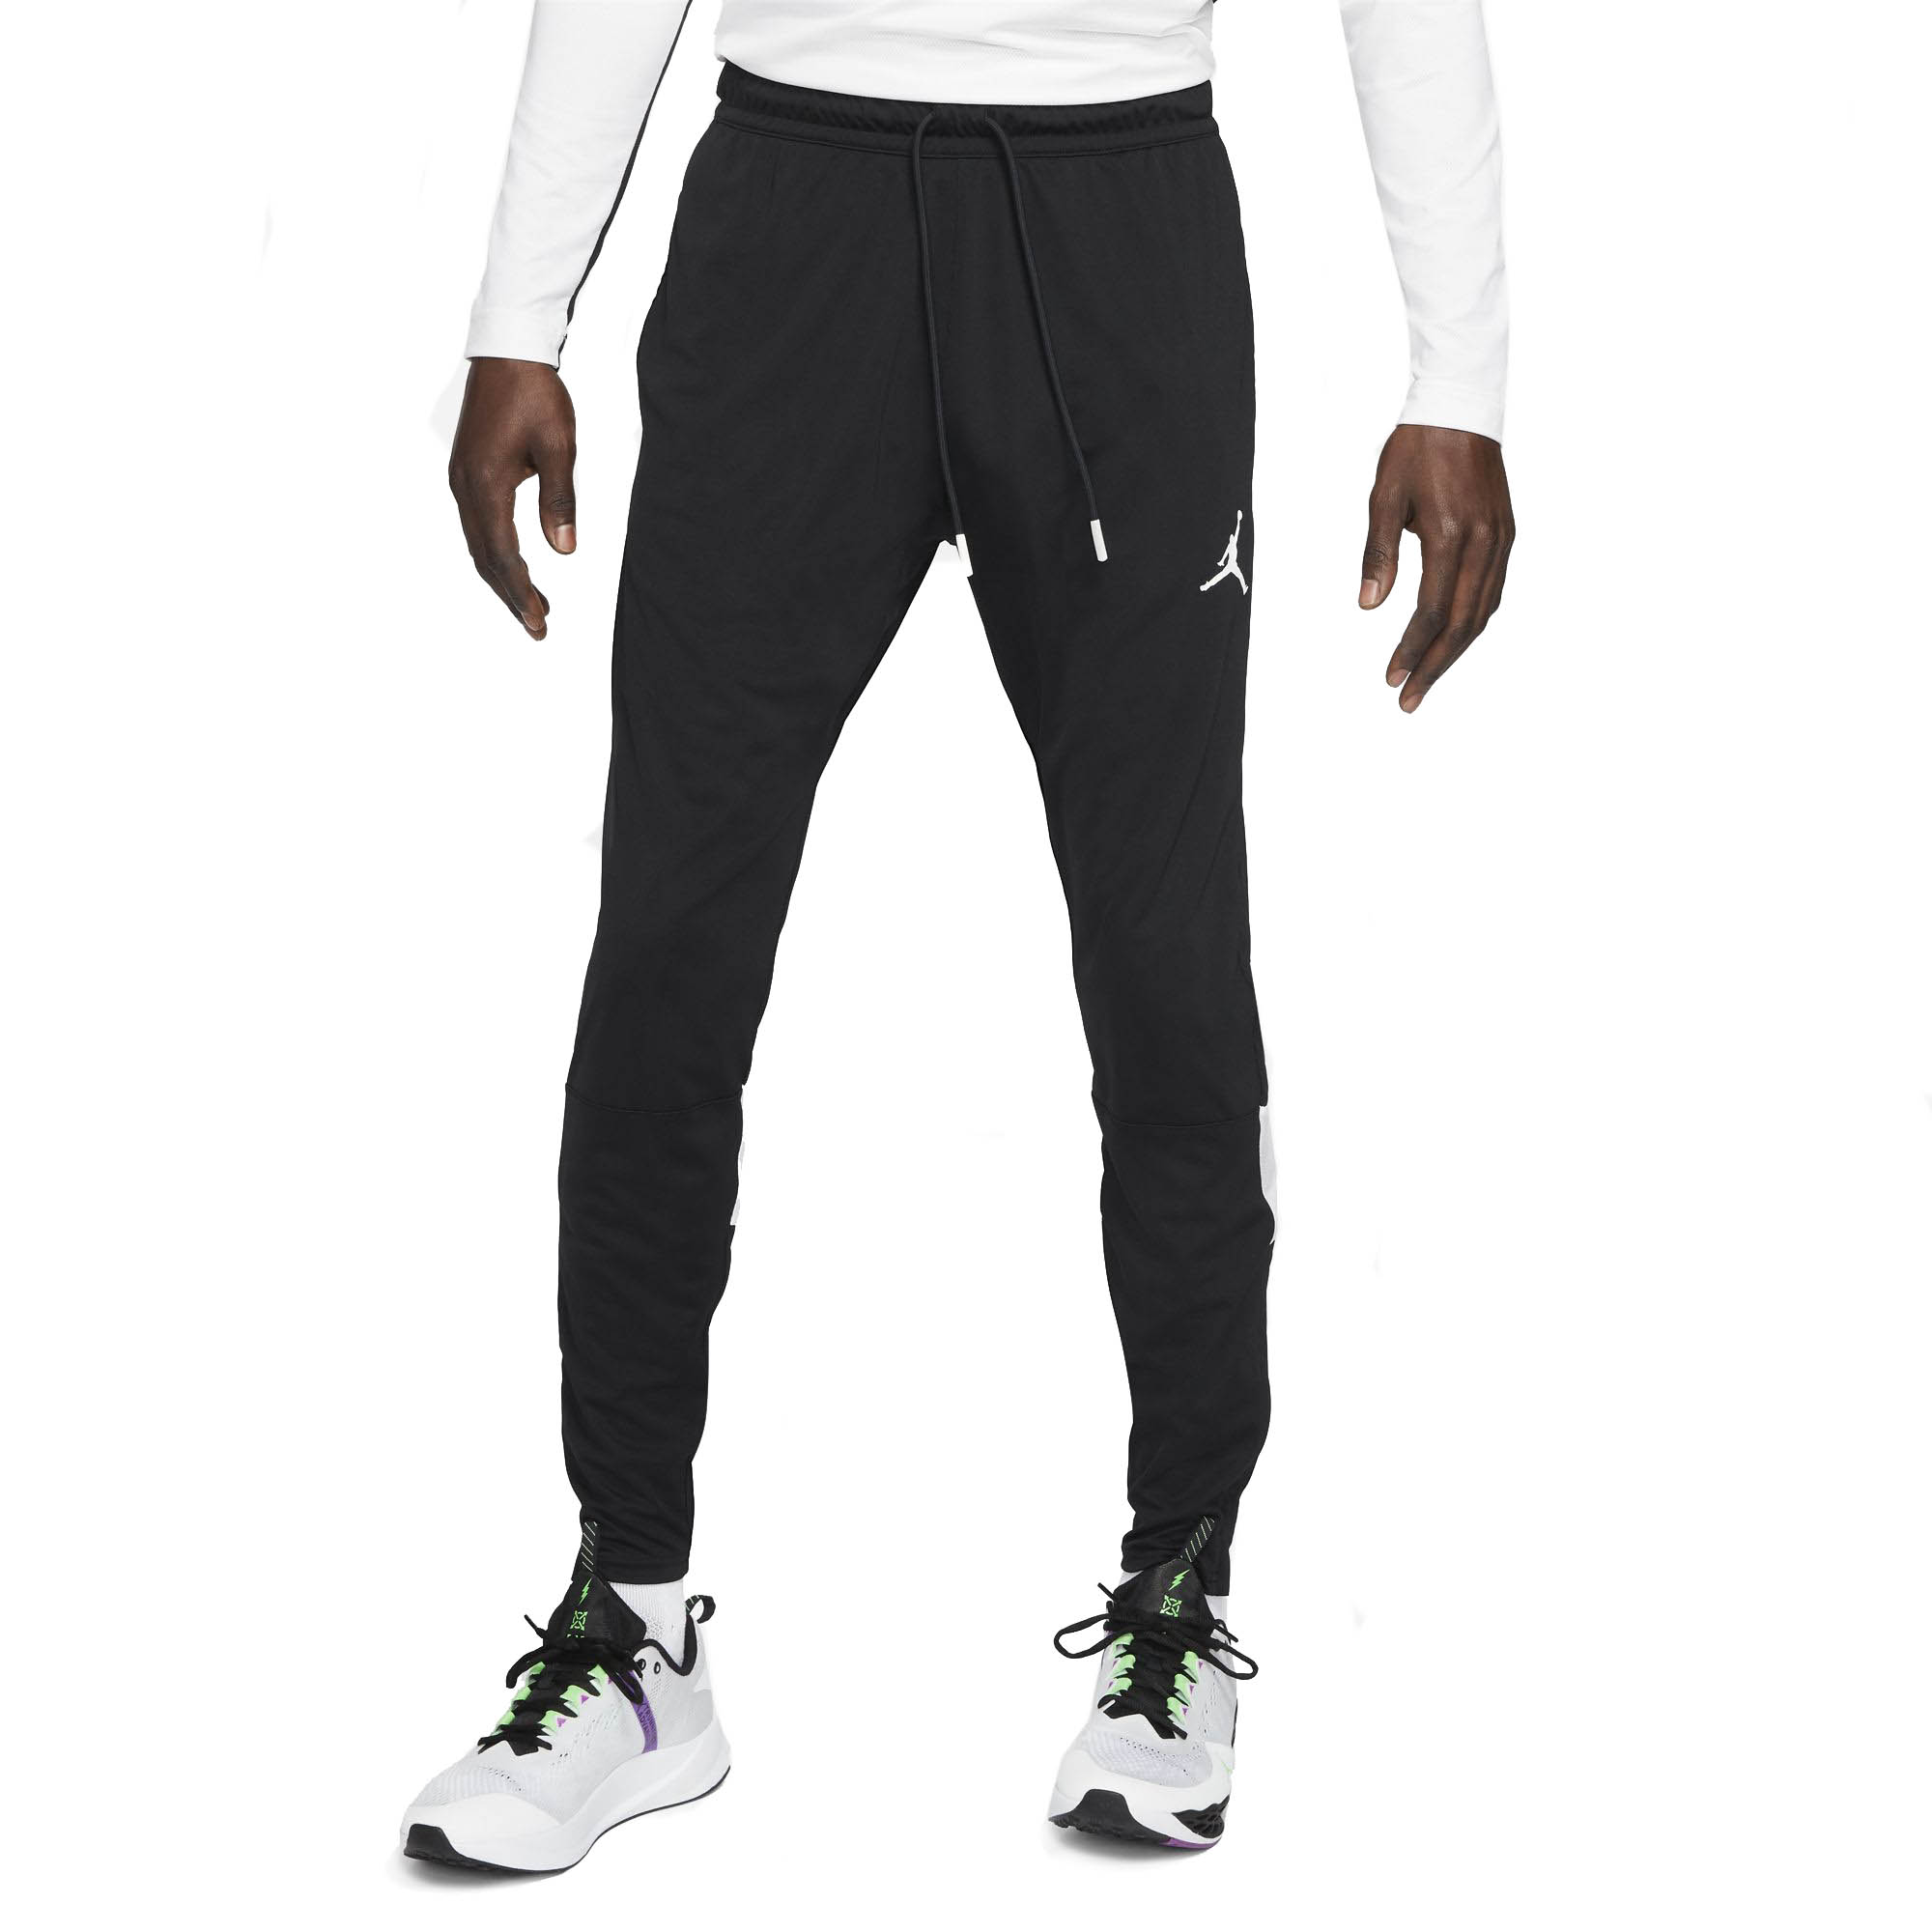 Спортивные штаны Jordan купить в интернет магазине